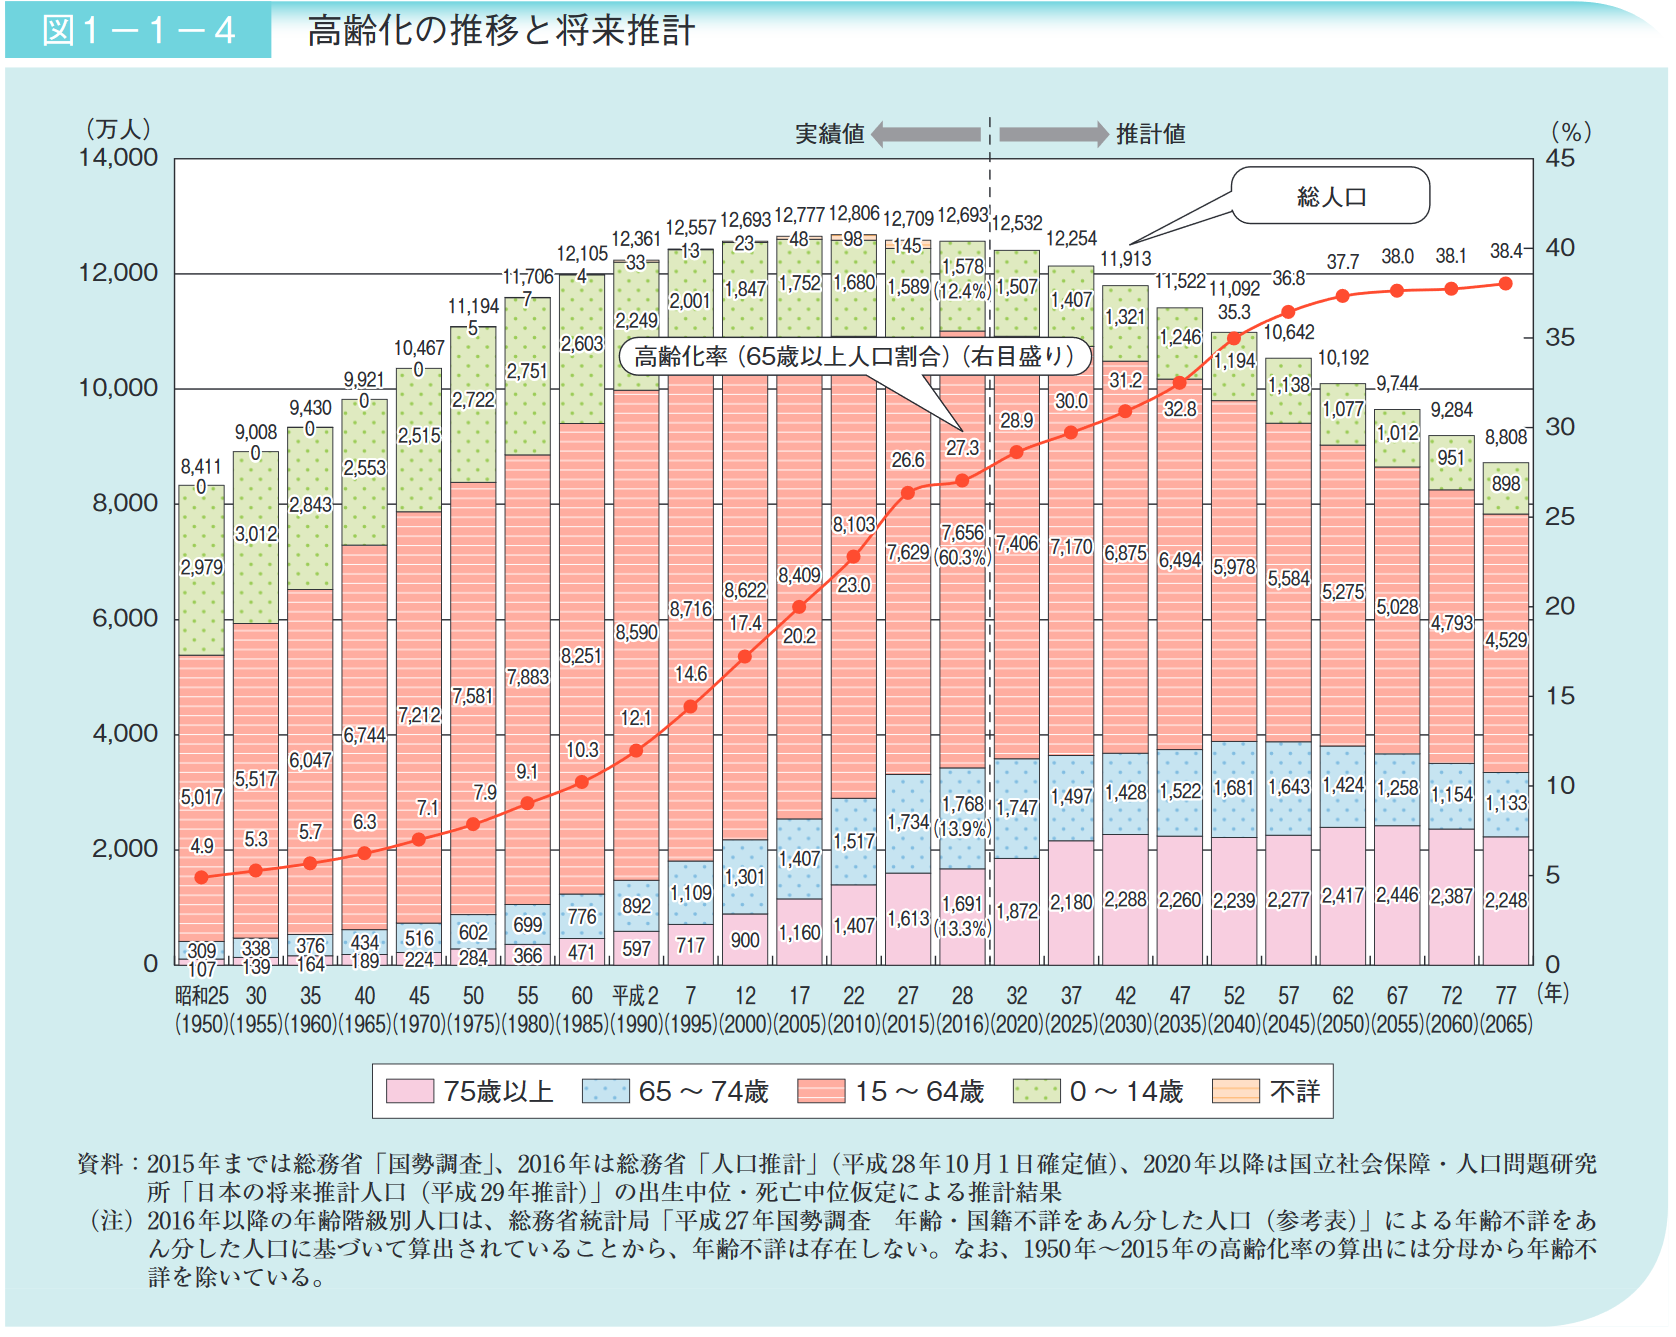 日本の高齢化率の予測